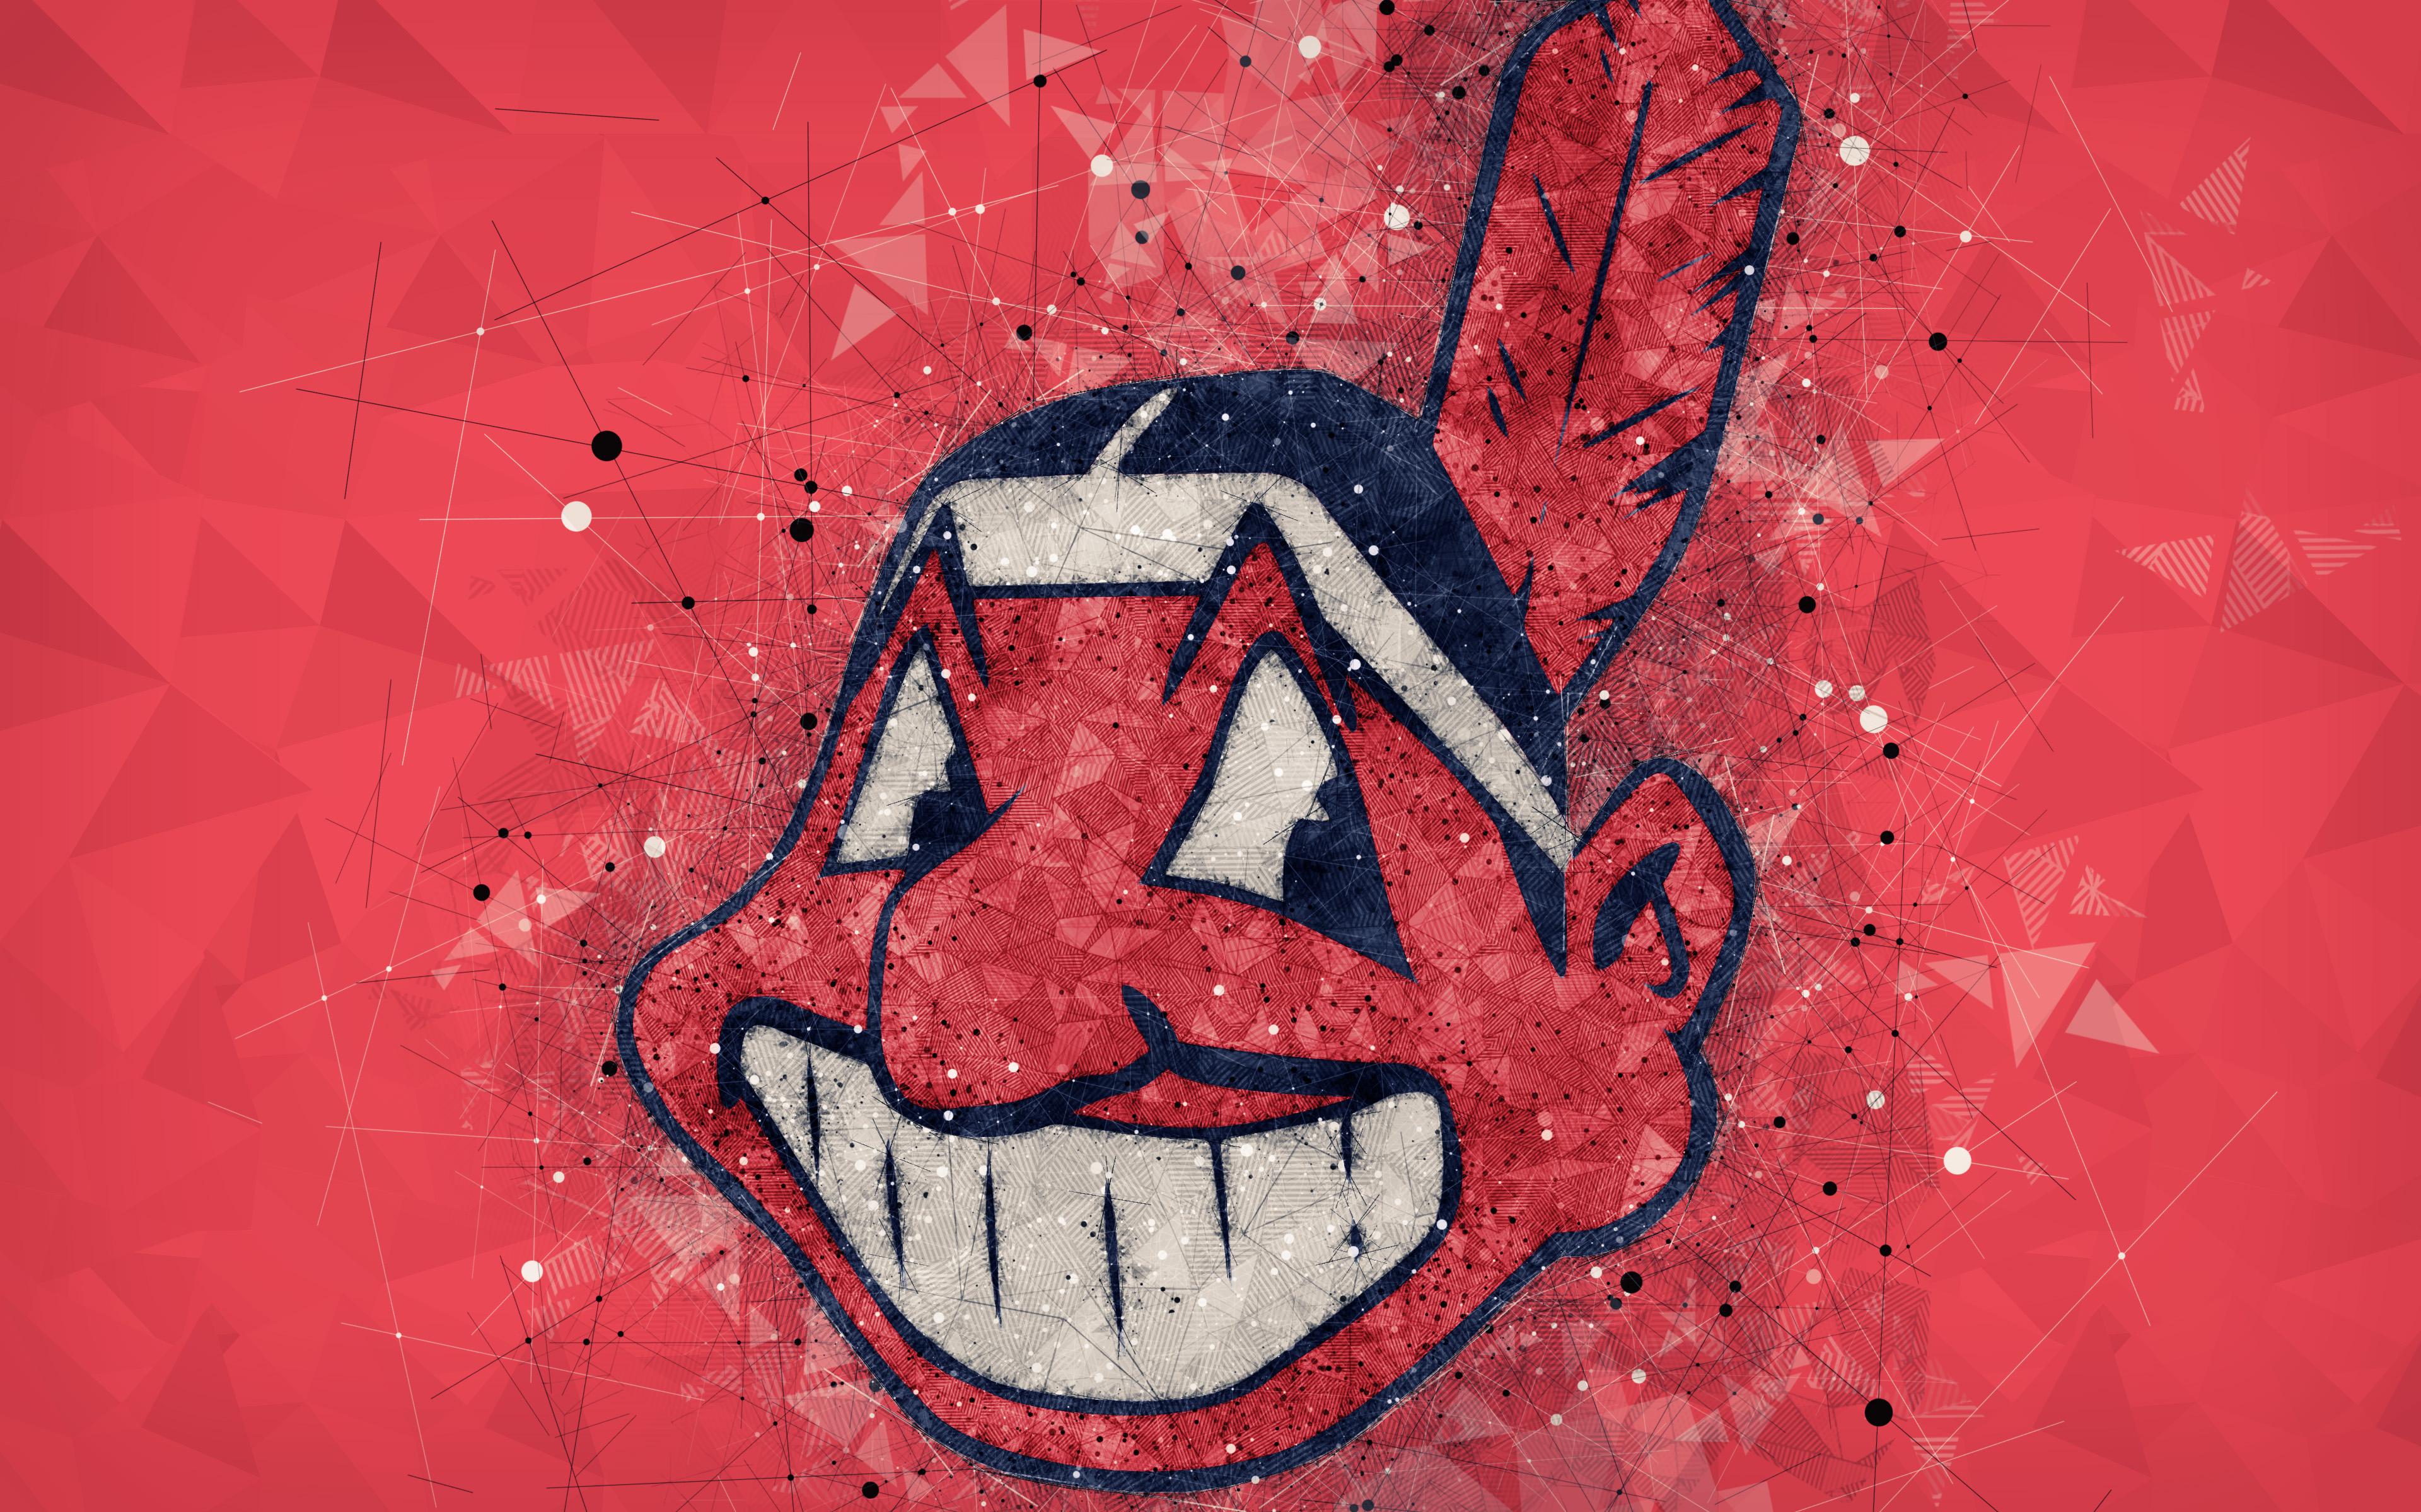 Cleveland Indians 4k Ultra HD Wallpaper